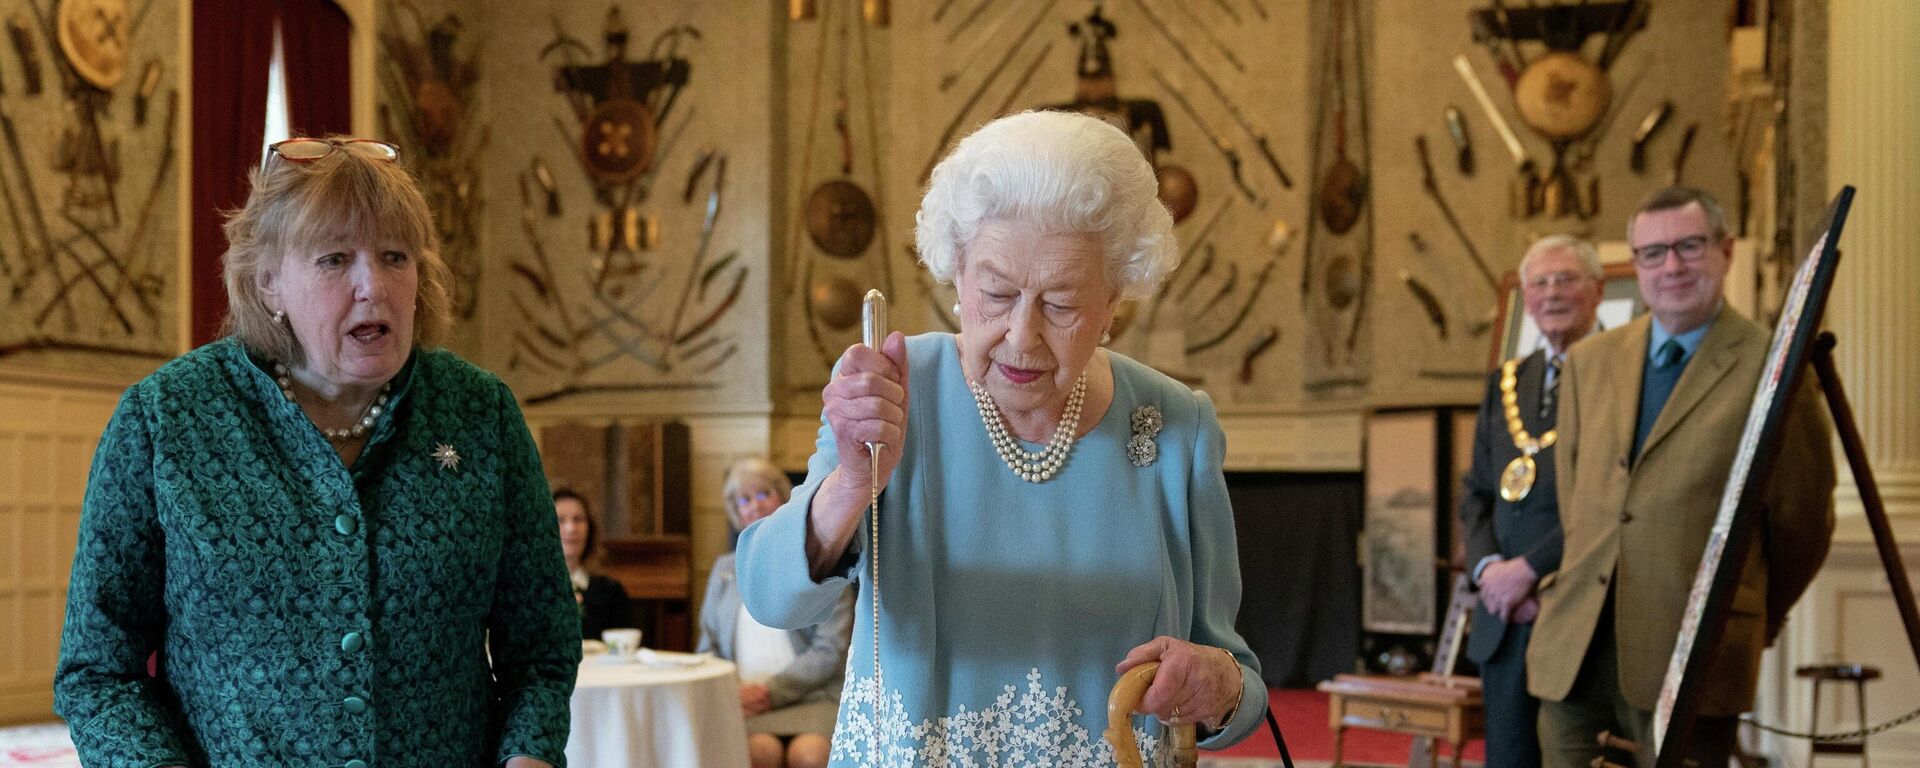 Королева Великобритании Елизавета II разрезает торт в честь начала своего Платинового юбилея во время приема в бальном зале Сандрингемского дома, резиденции королевы в Норфолке, 5 февраля 2022 года. - Sputnik Азербайджан, 1920, 07.02.2022